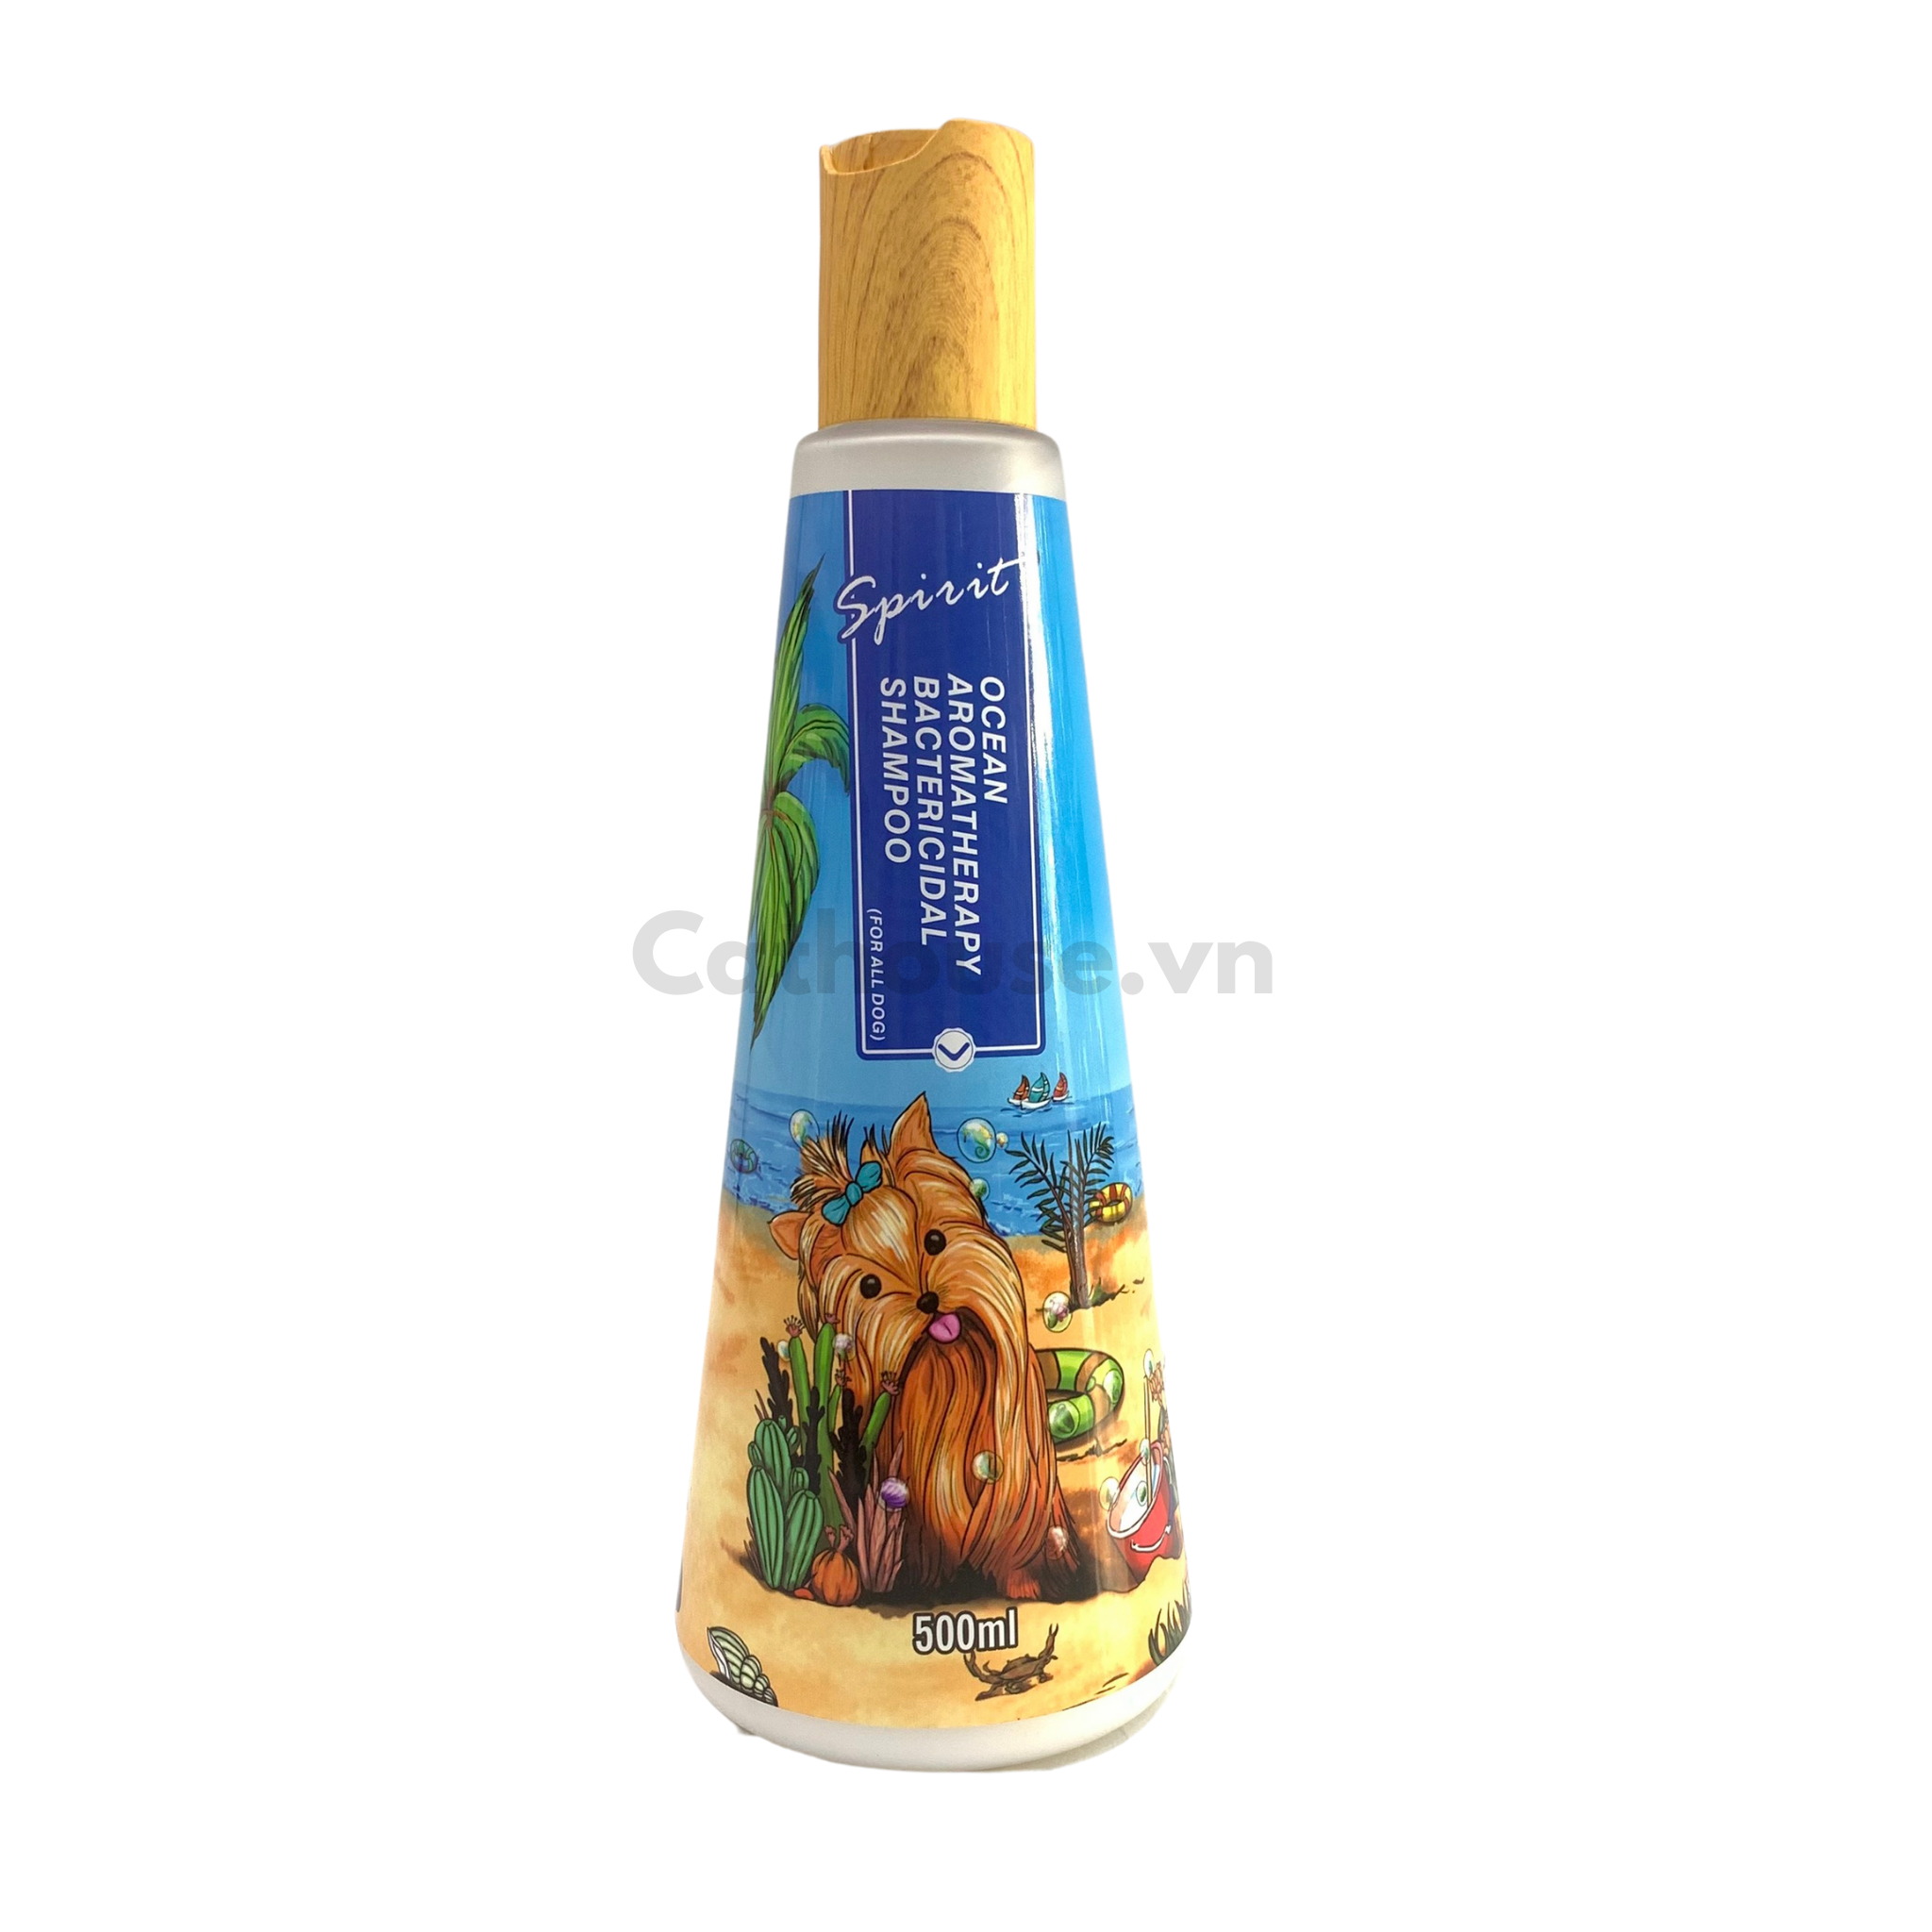  Sữa Tắm Nắp Gỗ Spirit Shampoo Cho Chó 